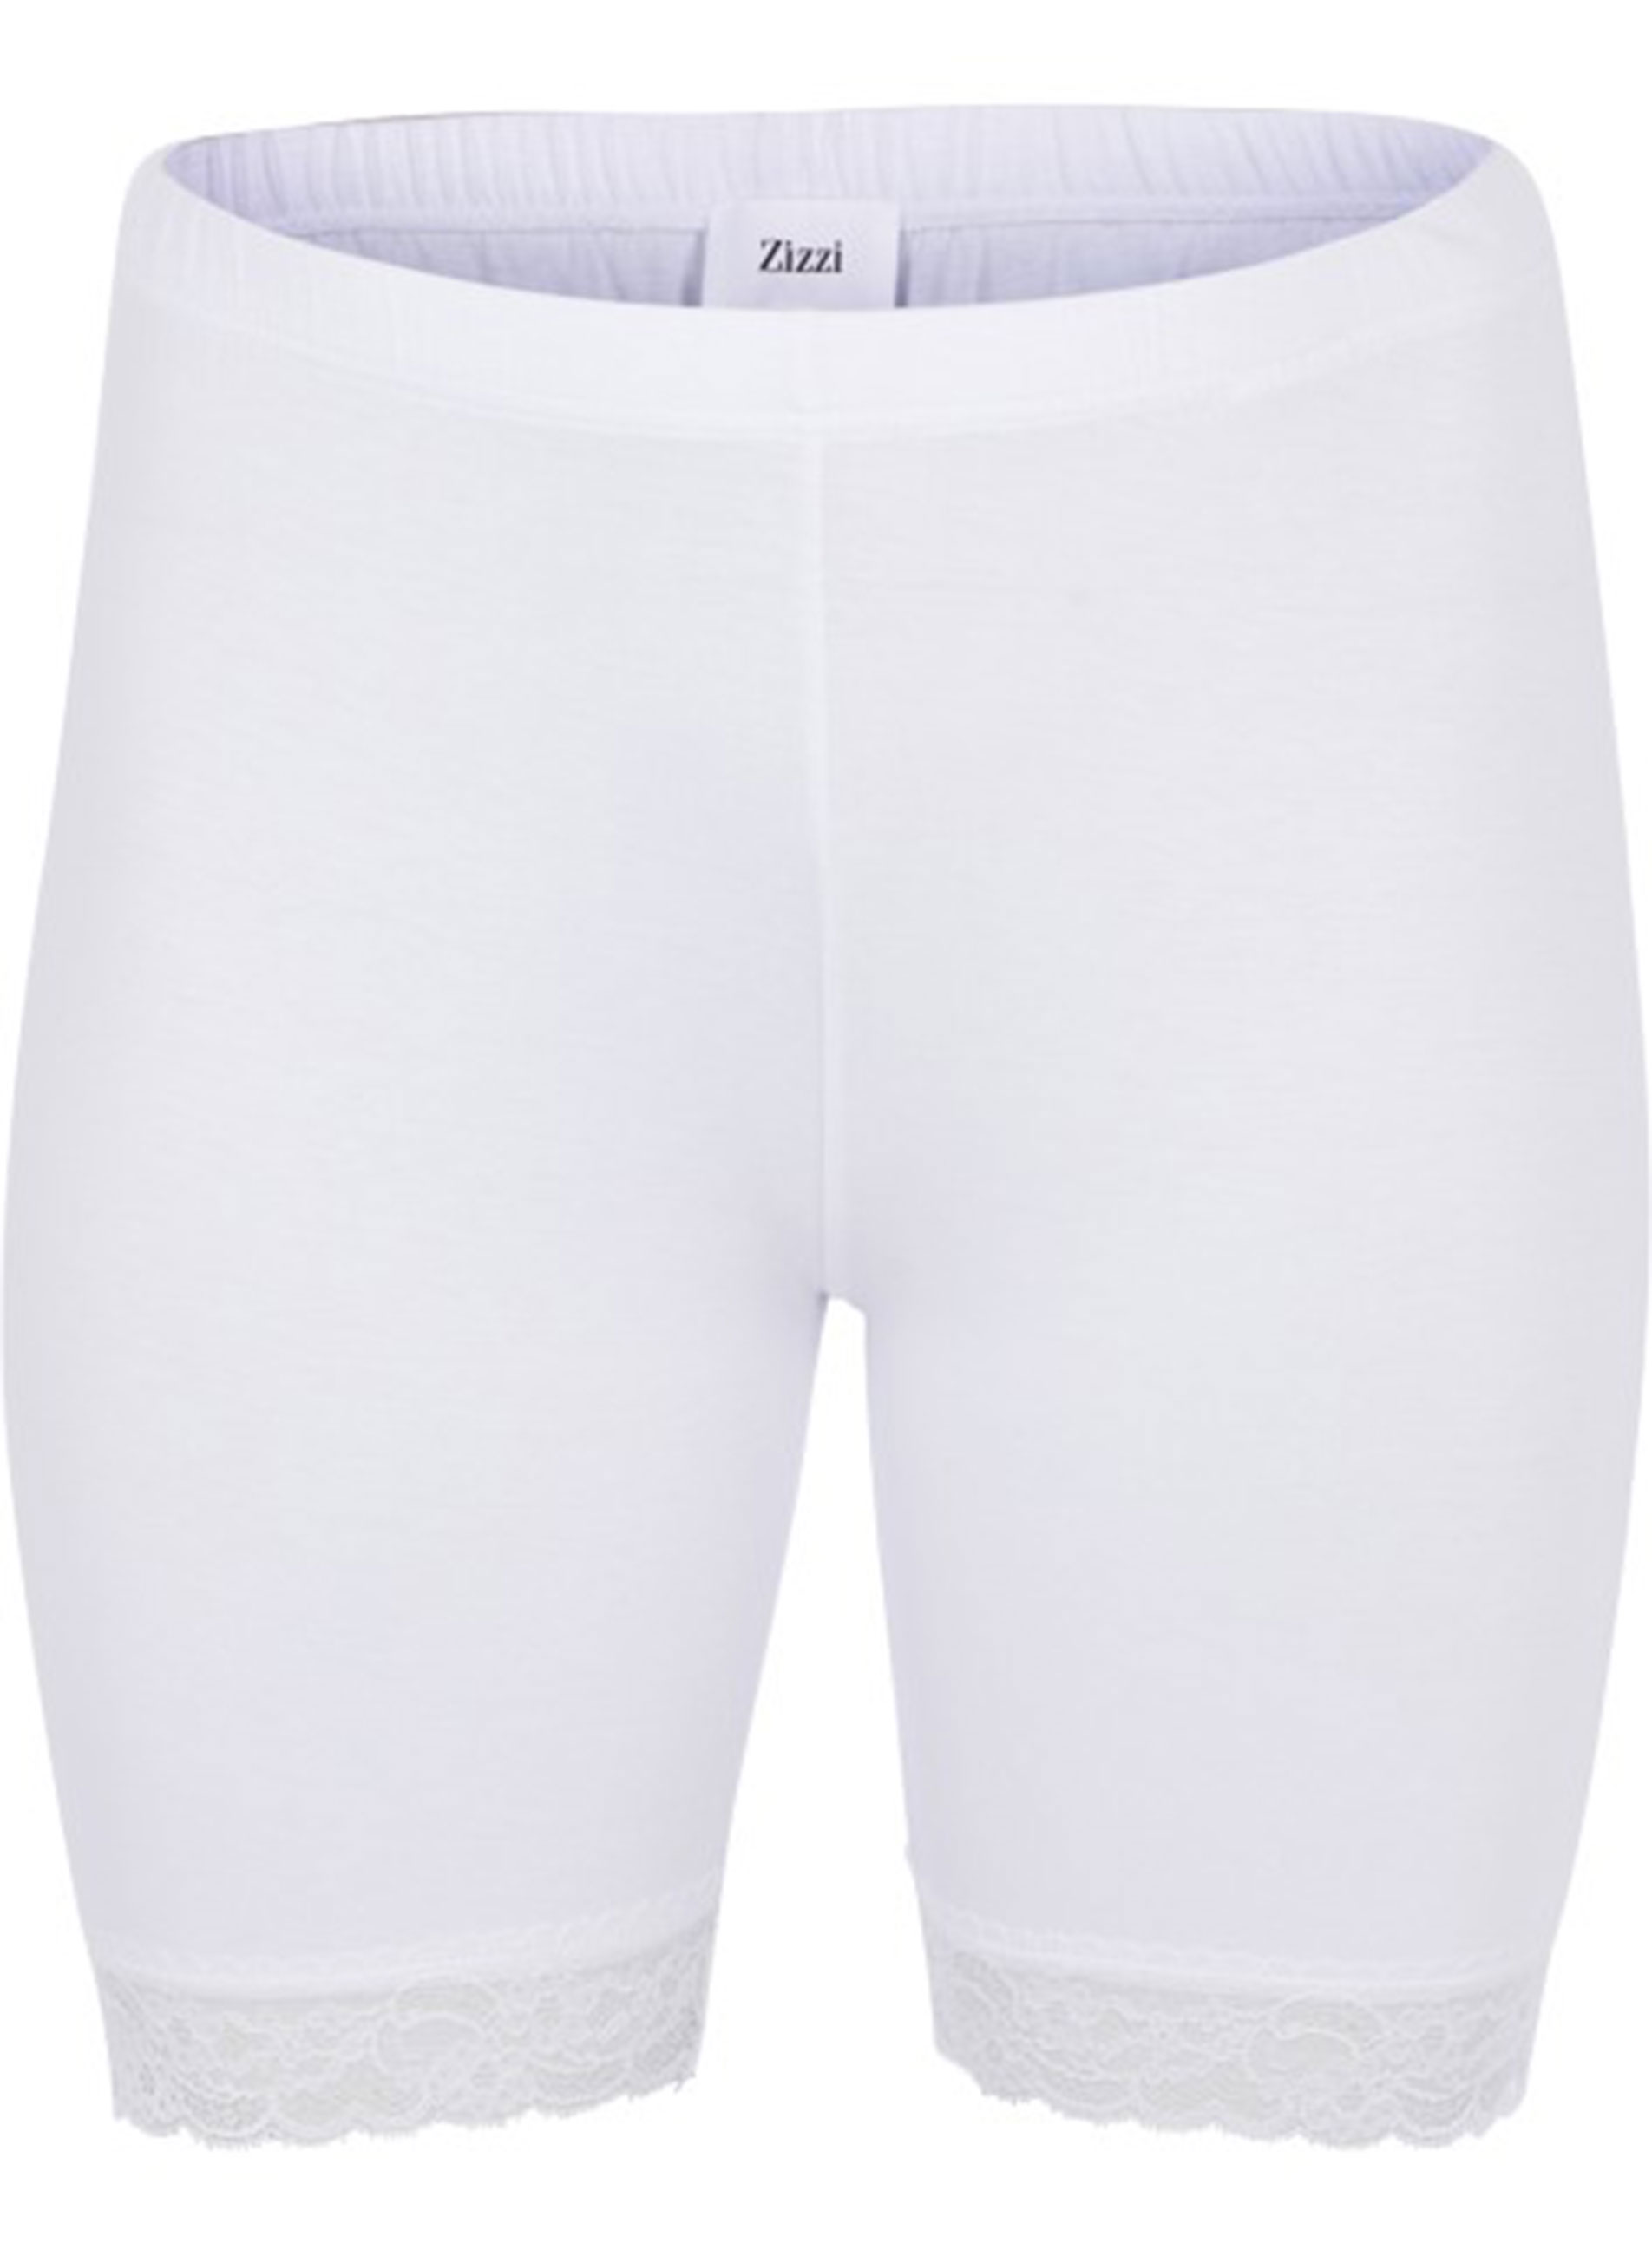 Άσπρο Shorts με Δαντέλα στο Τελείωμα ΕΣΩΡΟΥΧΑ > SHAPEWEAR